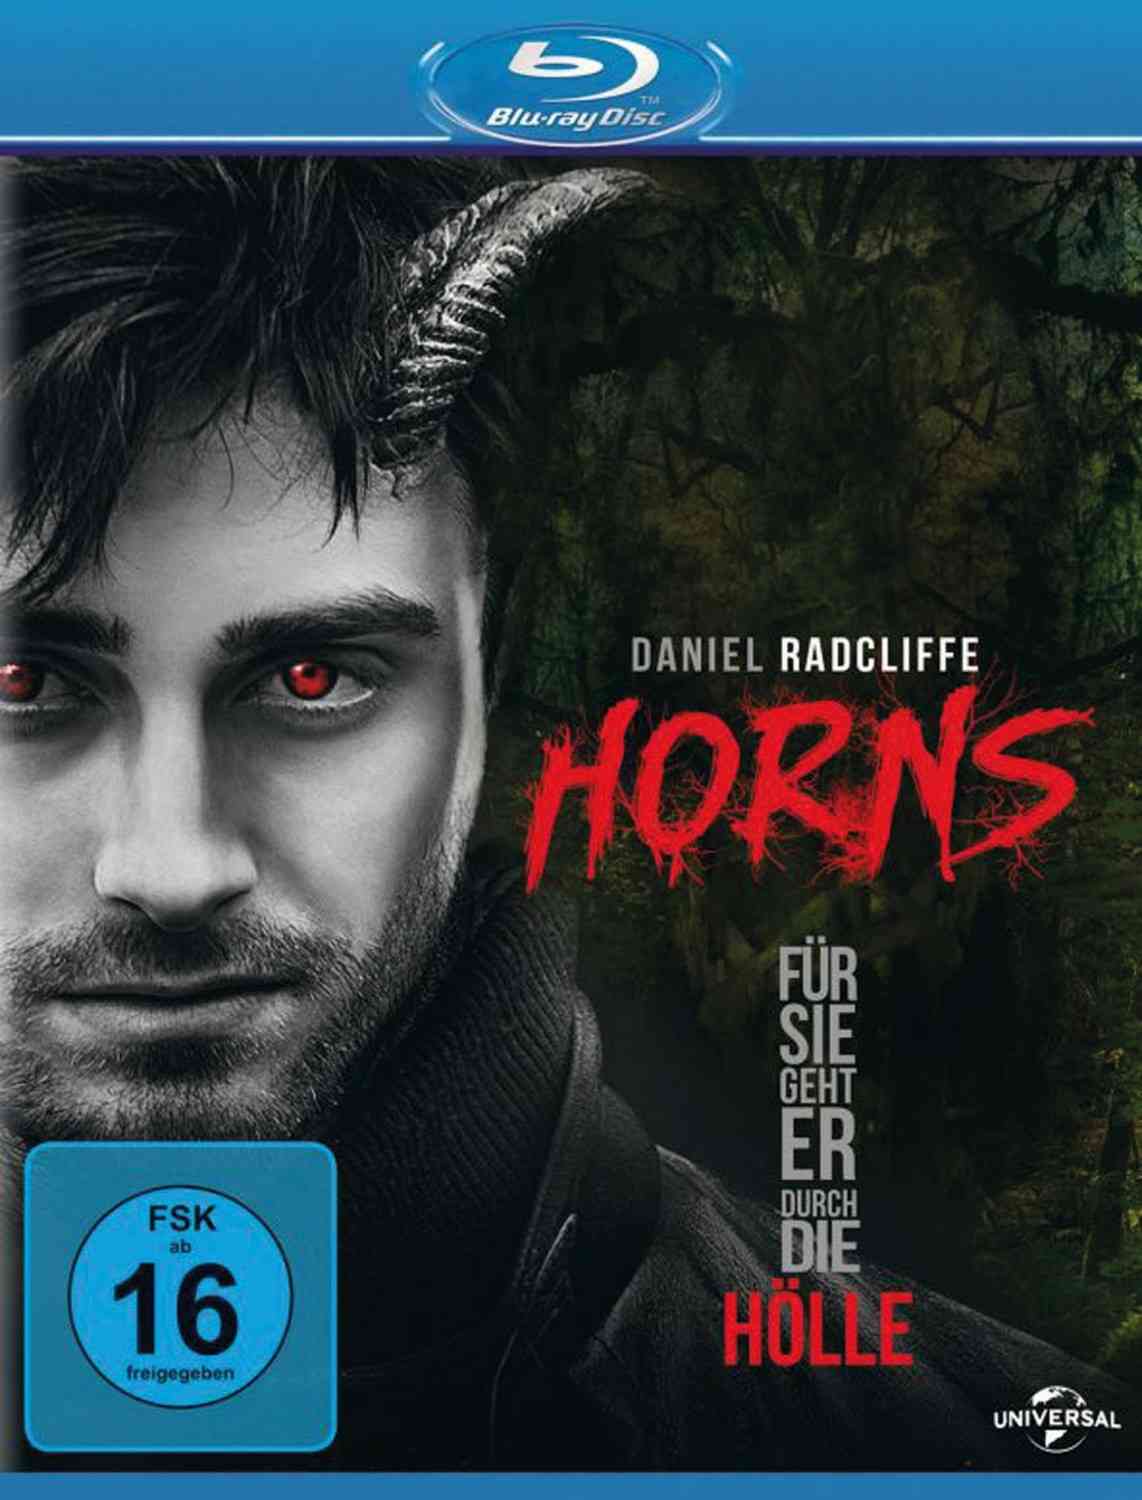 Test Blu-ray Film - Horns – Für sie geht er durch die Hölle (Universal